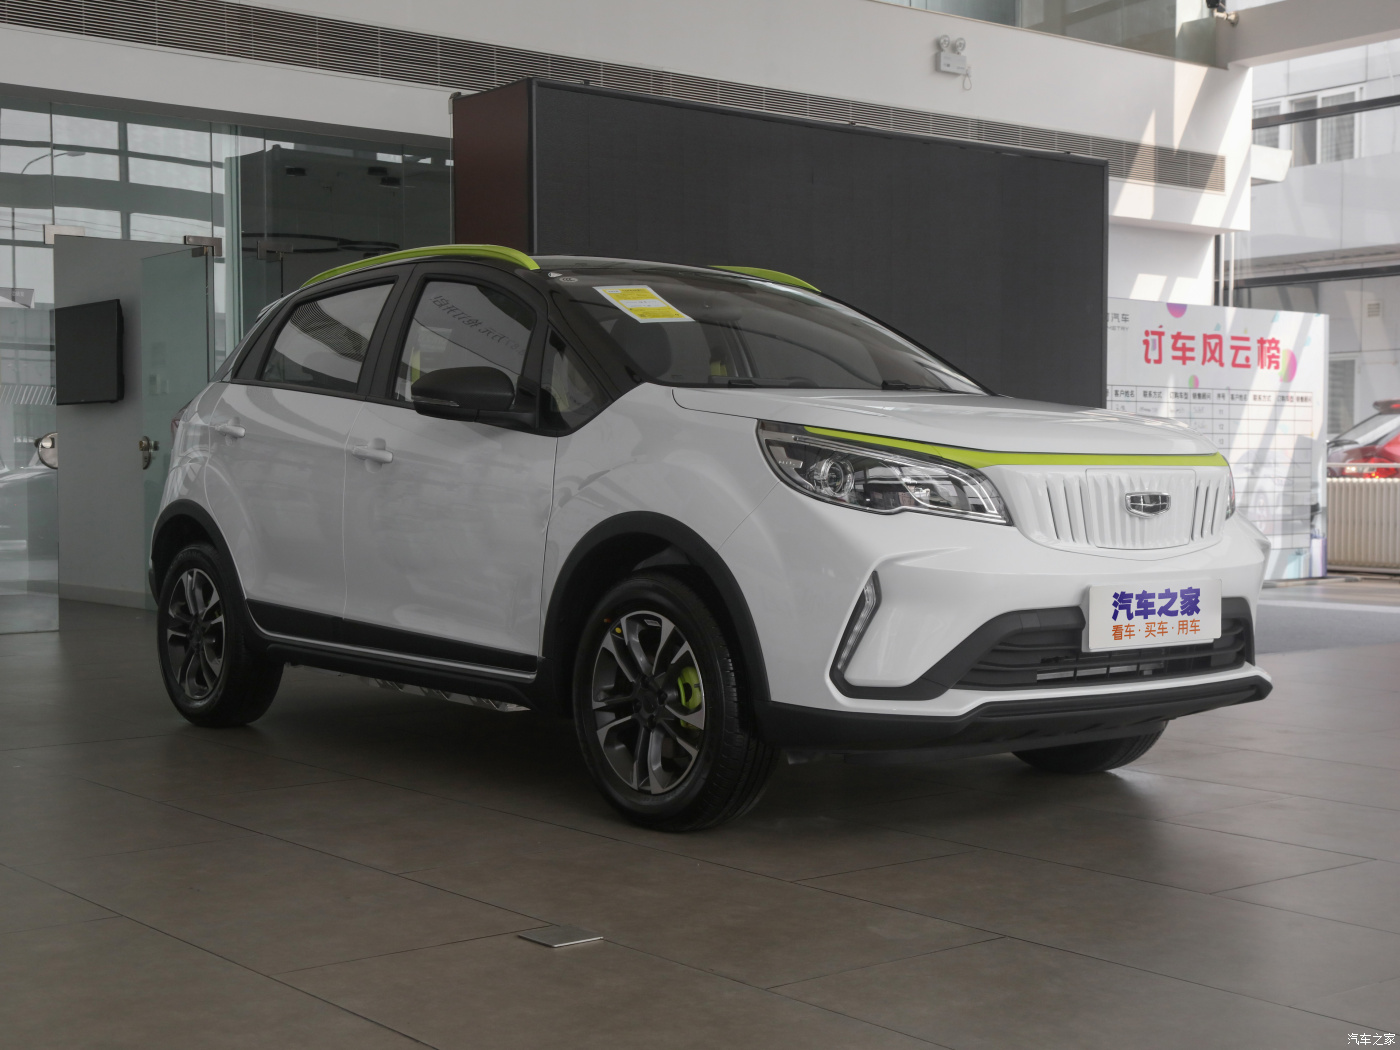 Купить автомобиль Geely Geometry EX3 из Китая под заказ по выгодной цене.